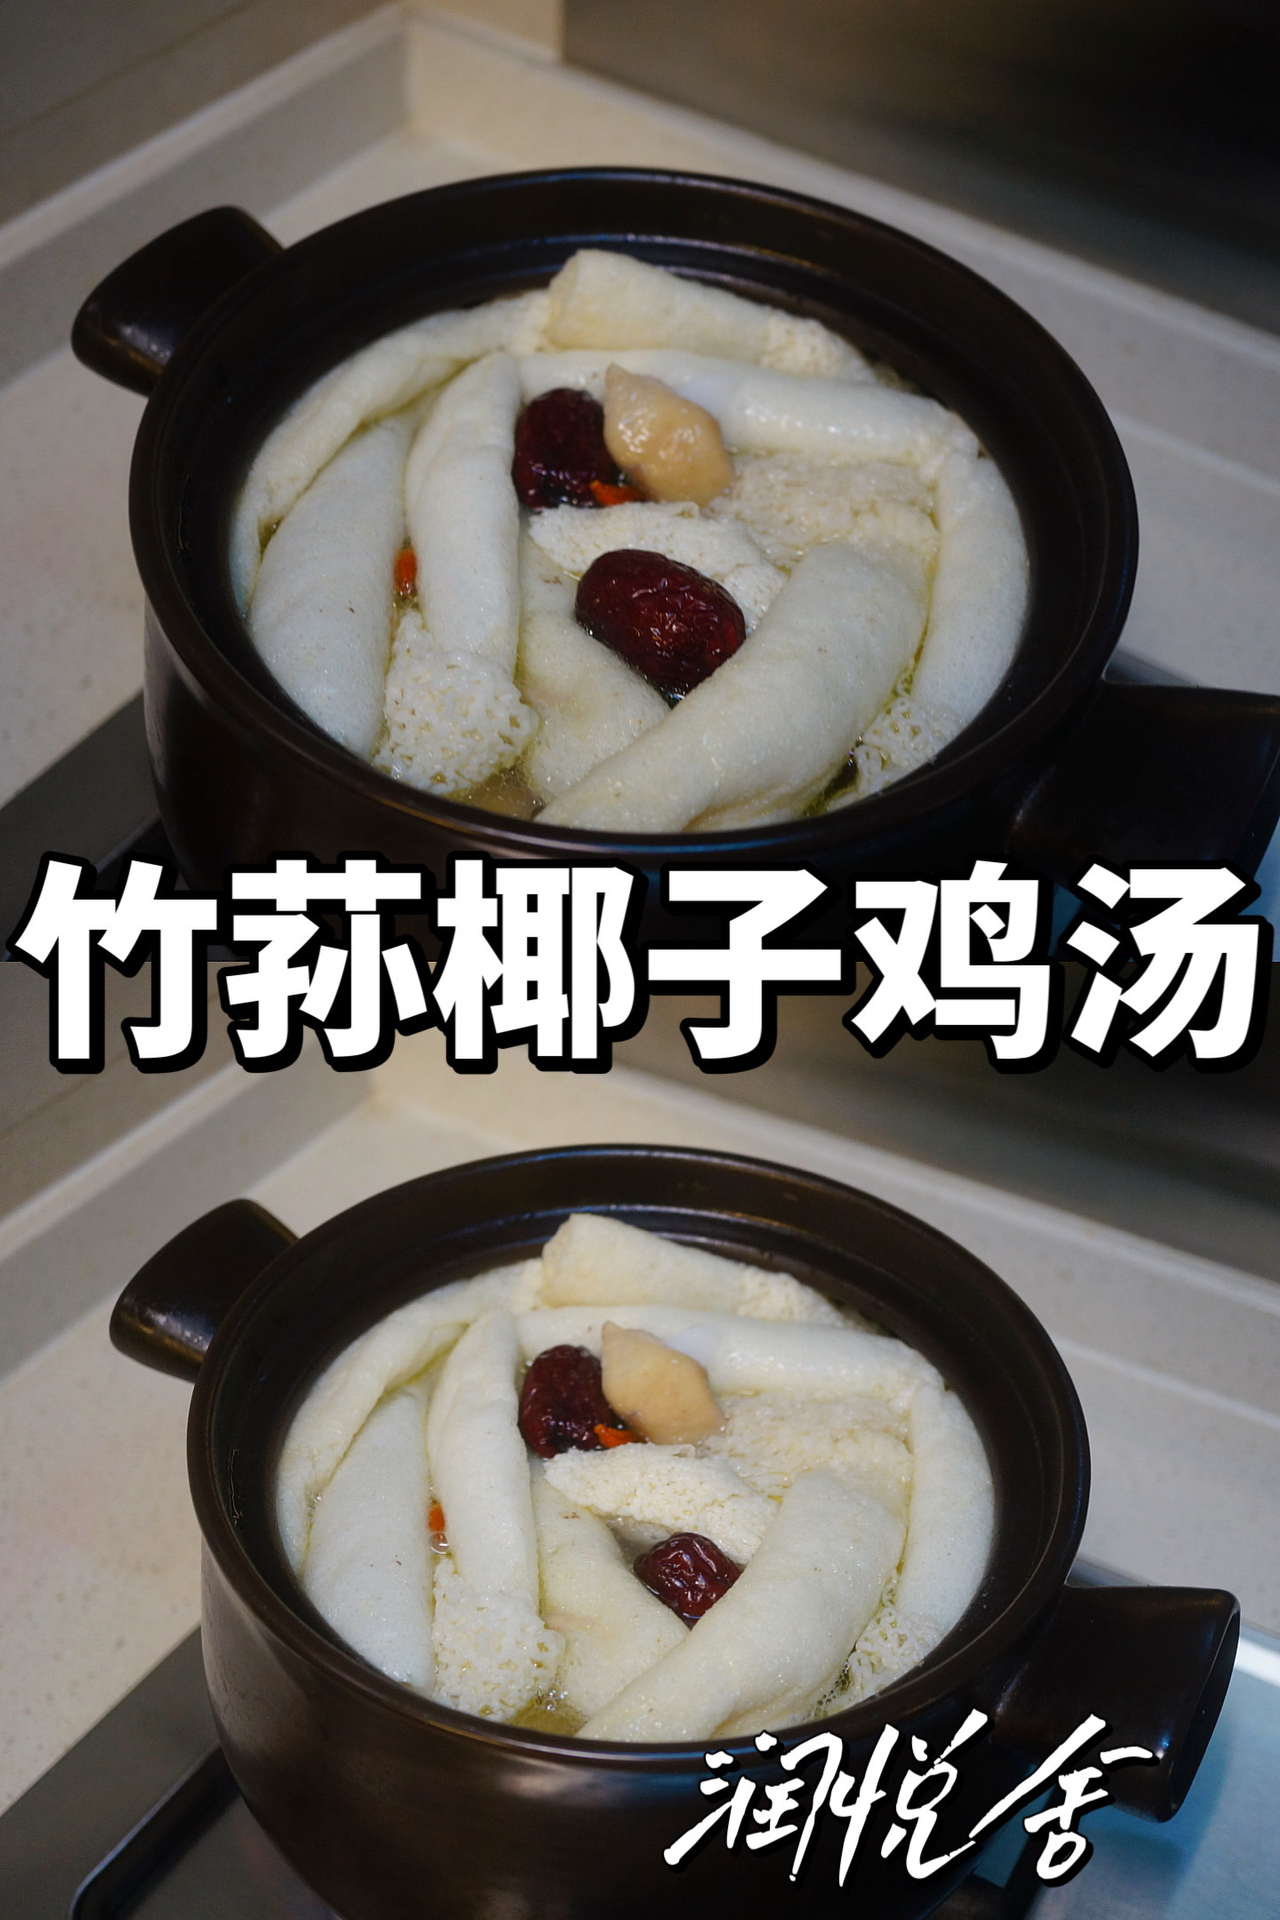 这碗汤太绝了‼️‼️竹荪椰子鸡汤 广东靓汤🍲